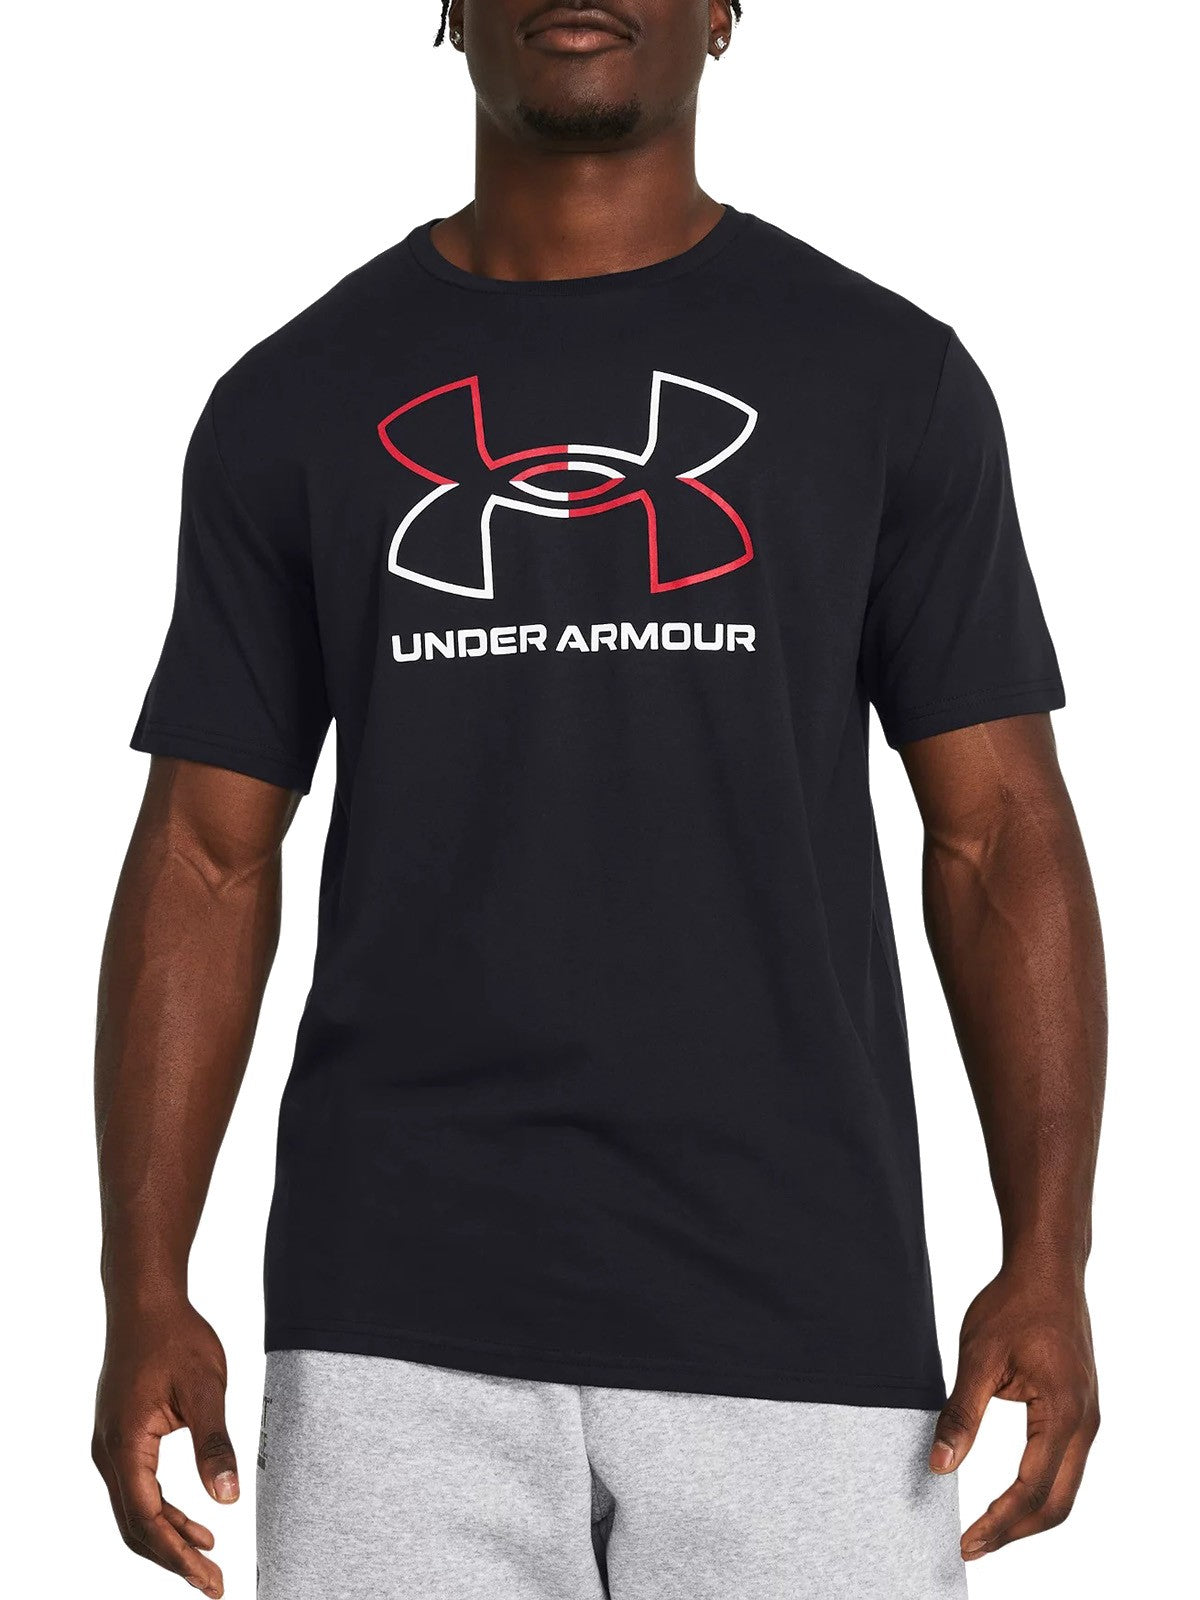 T-shirt Uomo Under Armour - Maglia A Maniche Corte Ua Foundation - Nero